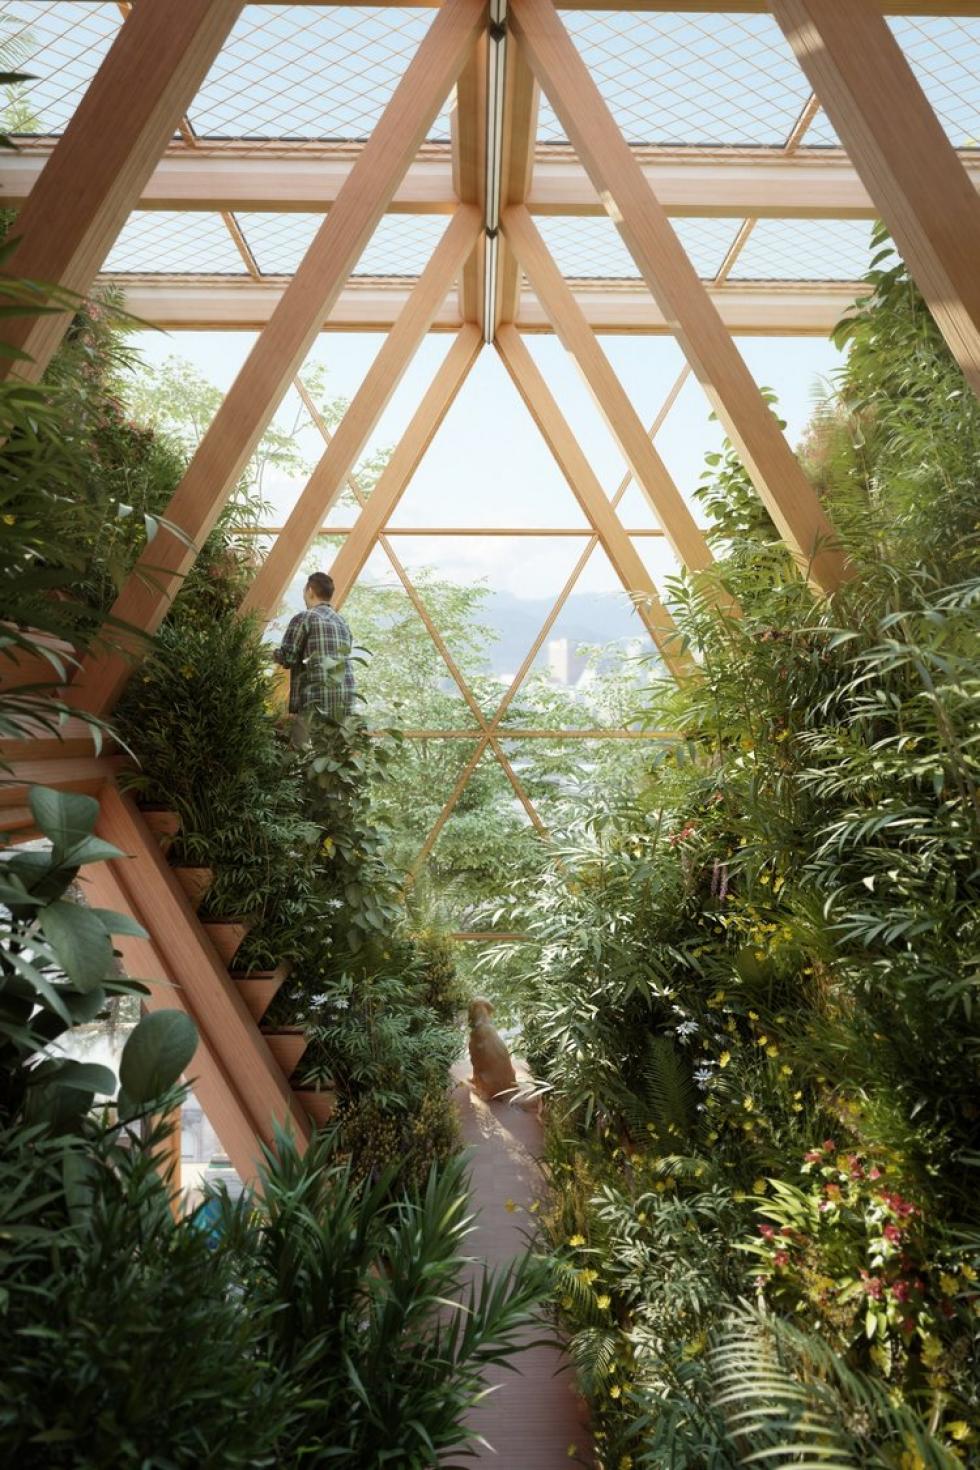 Farmház: a jövő fenntartható építészete, új perspektívába helyezve